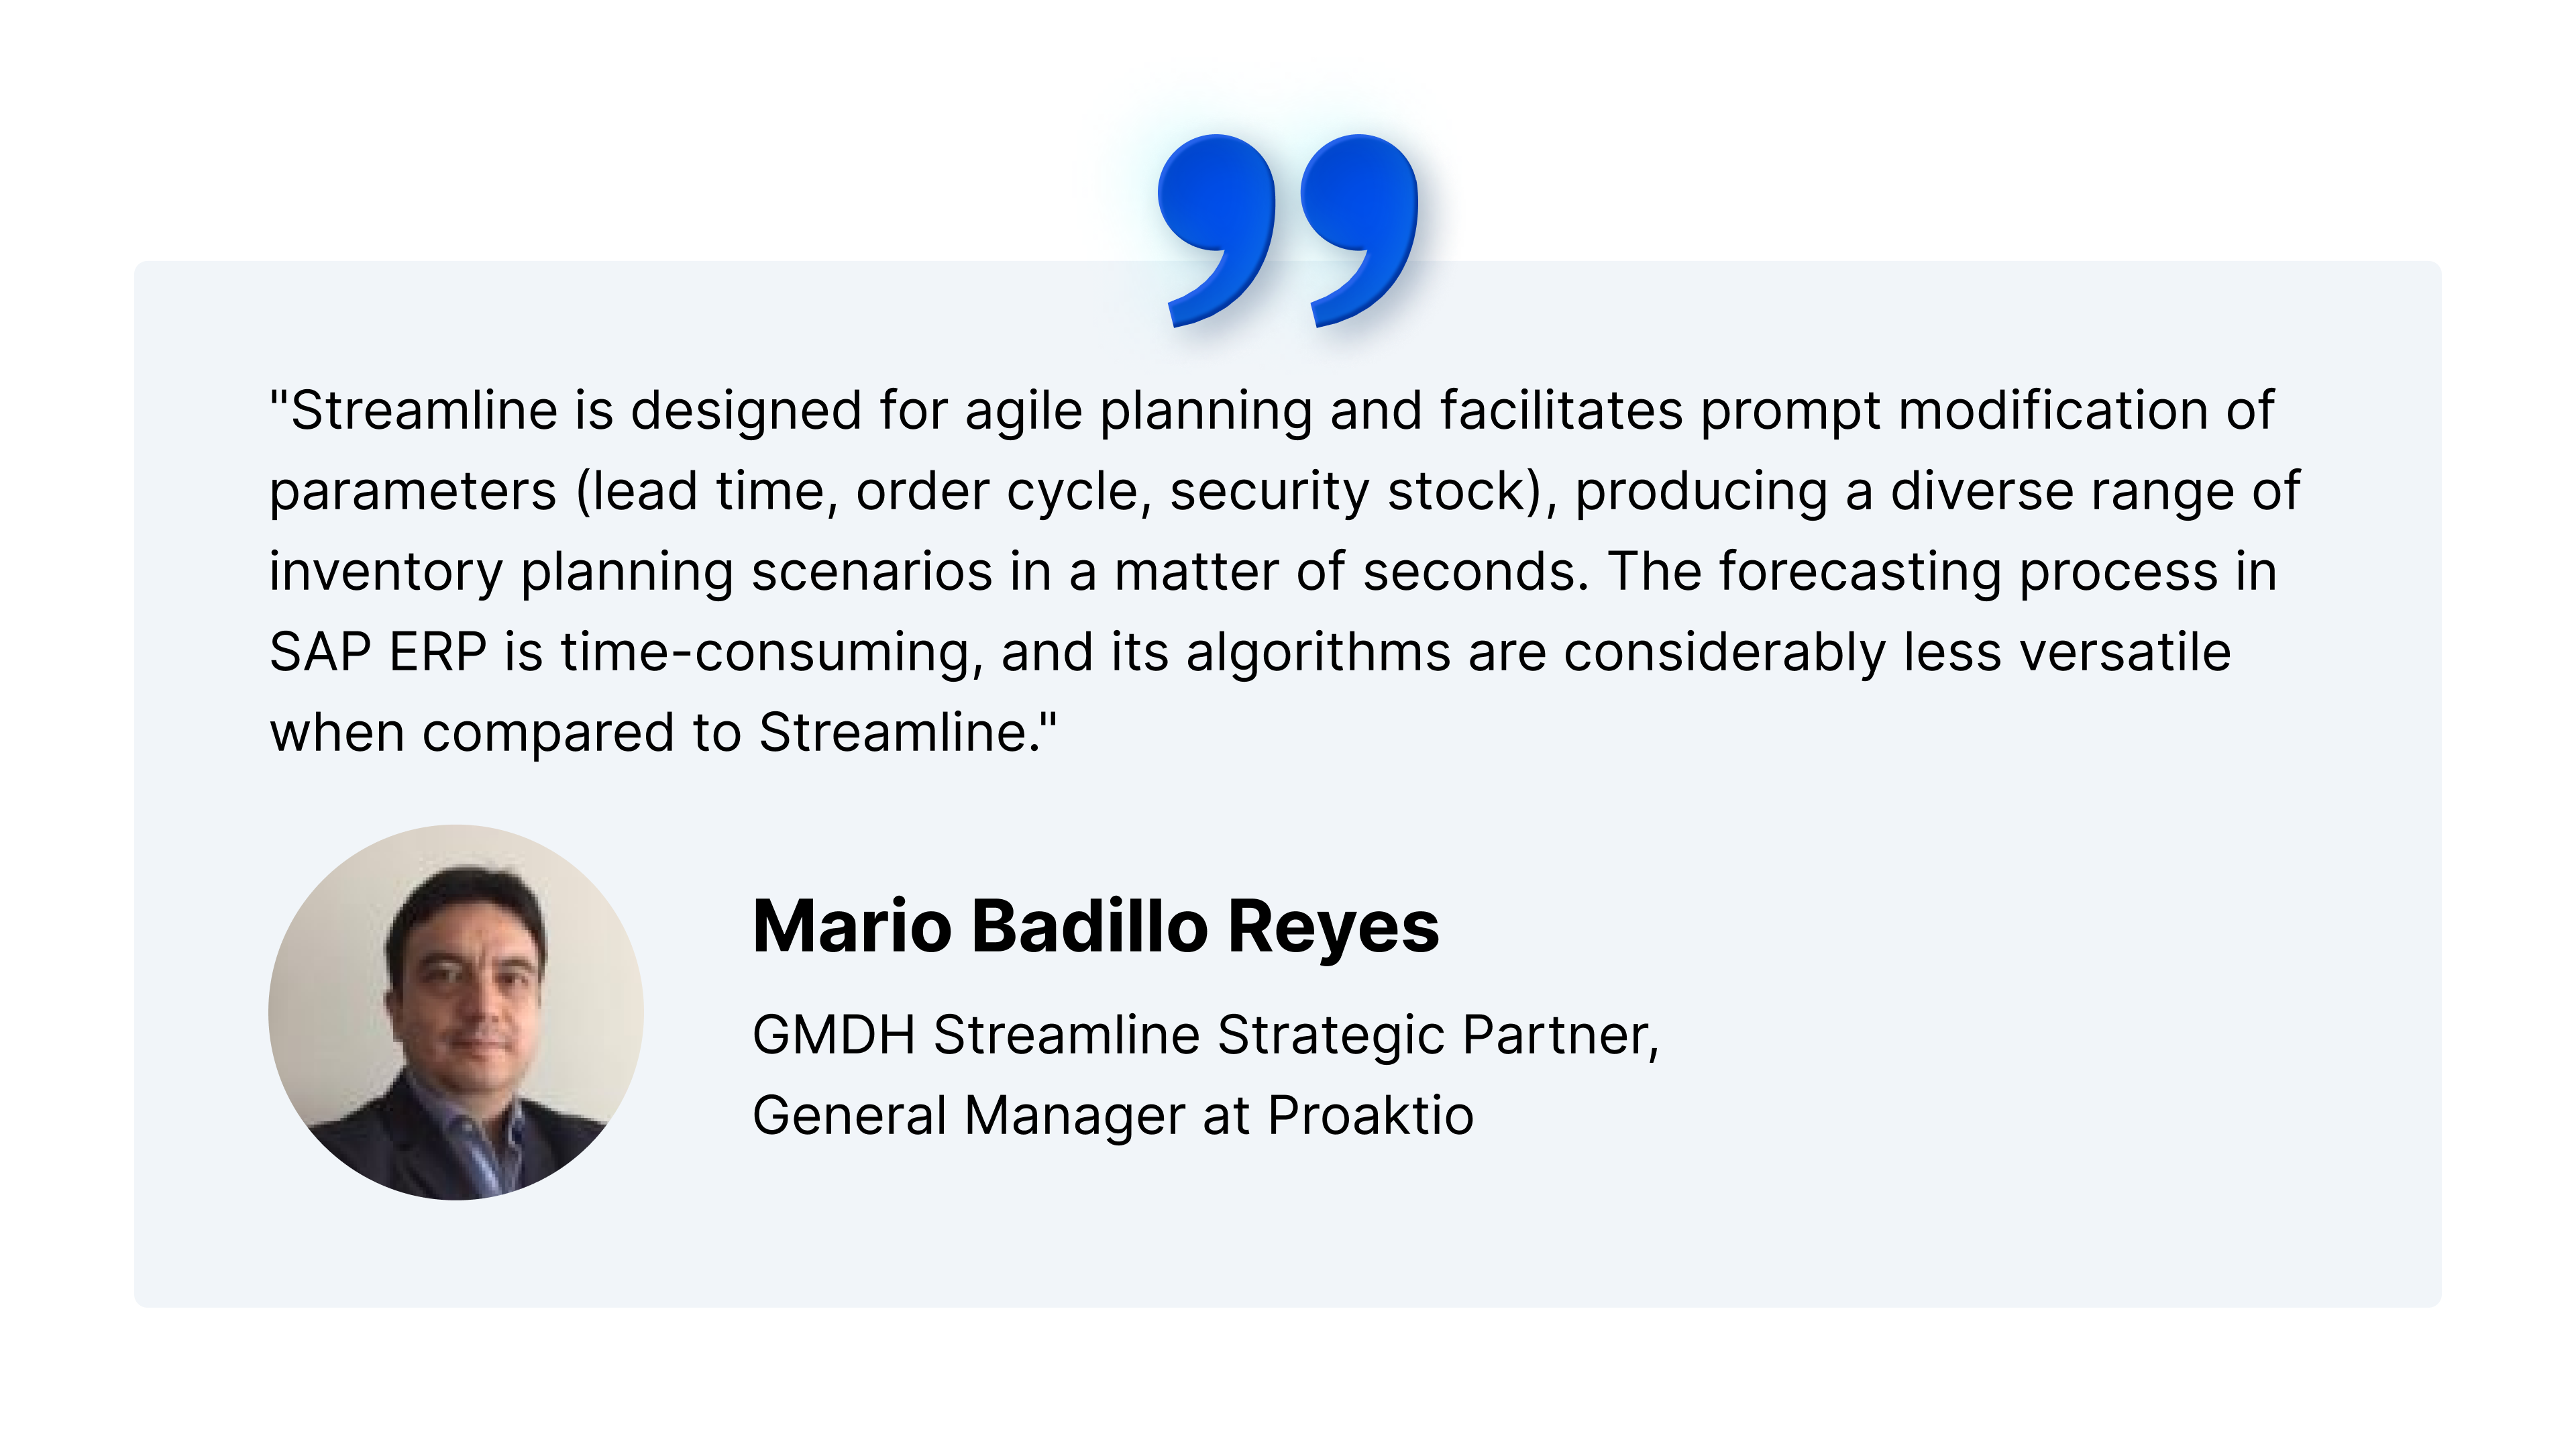 Mario Badillo ajánlása az SAP ERP és az Streamline együttes használatának előnyeiről